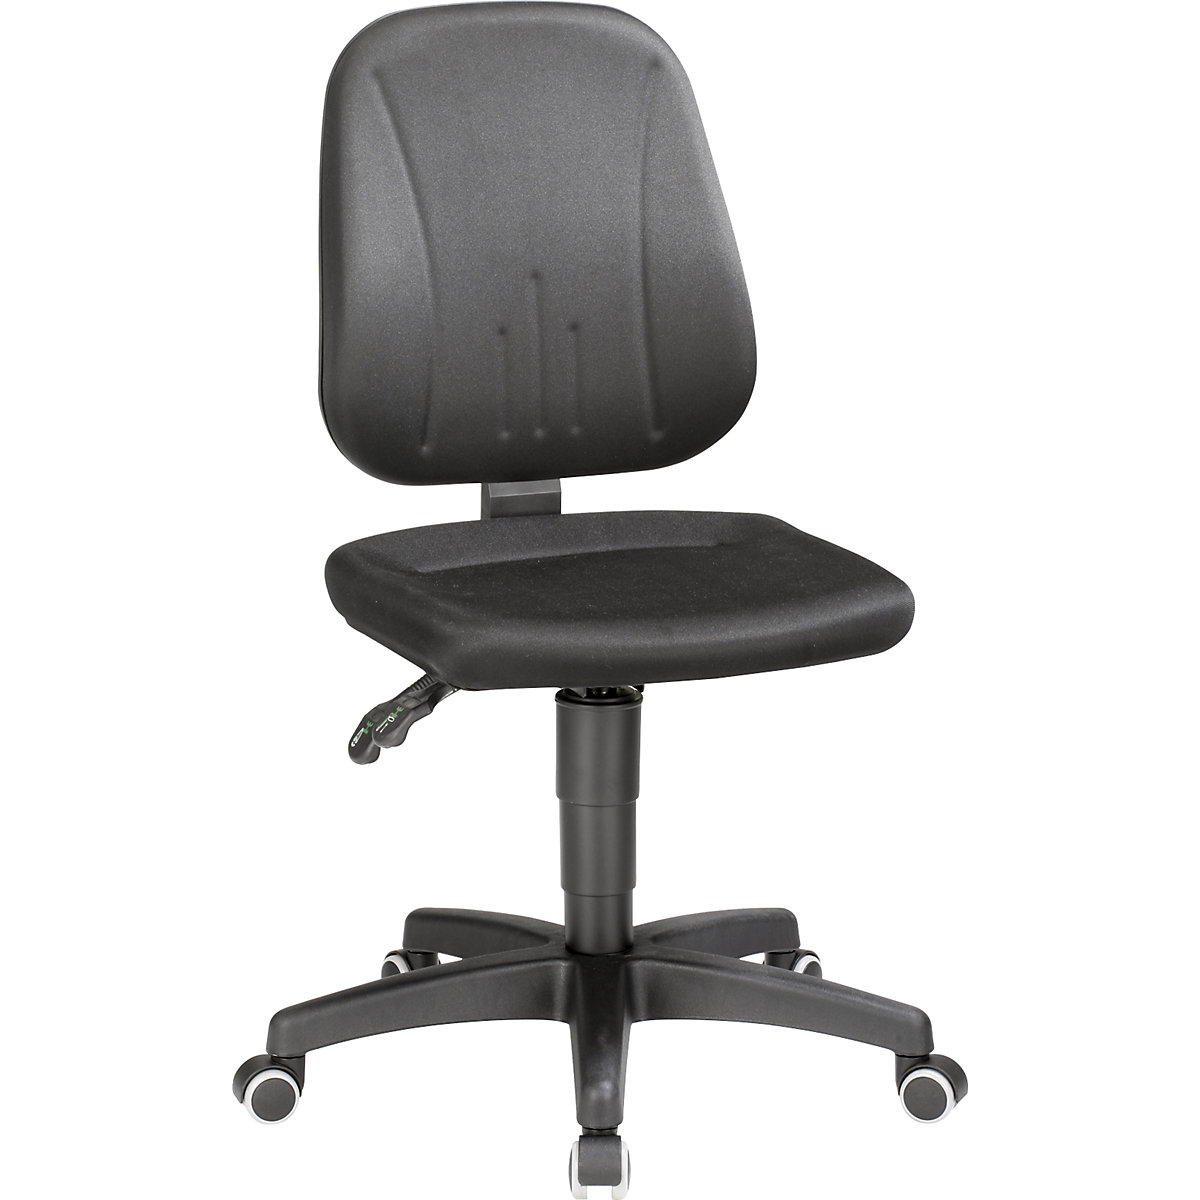 Pracovní otočná židle – bimos, s přestavováním výšky plynovým pístem, látkový potah, černá, s kolečky-18